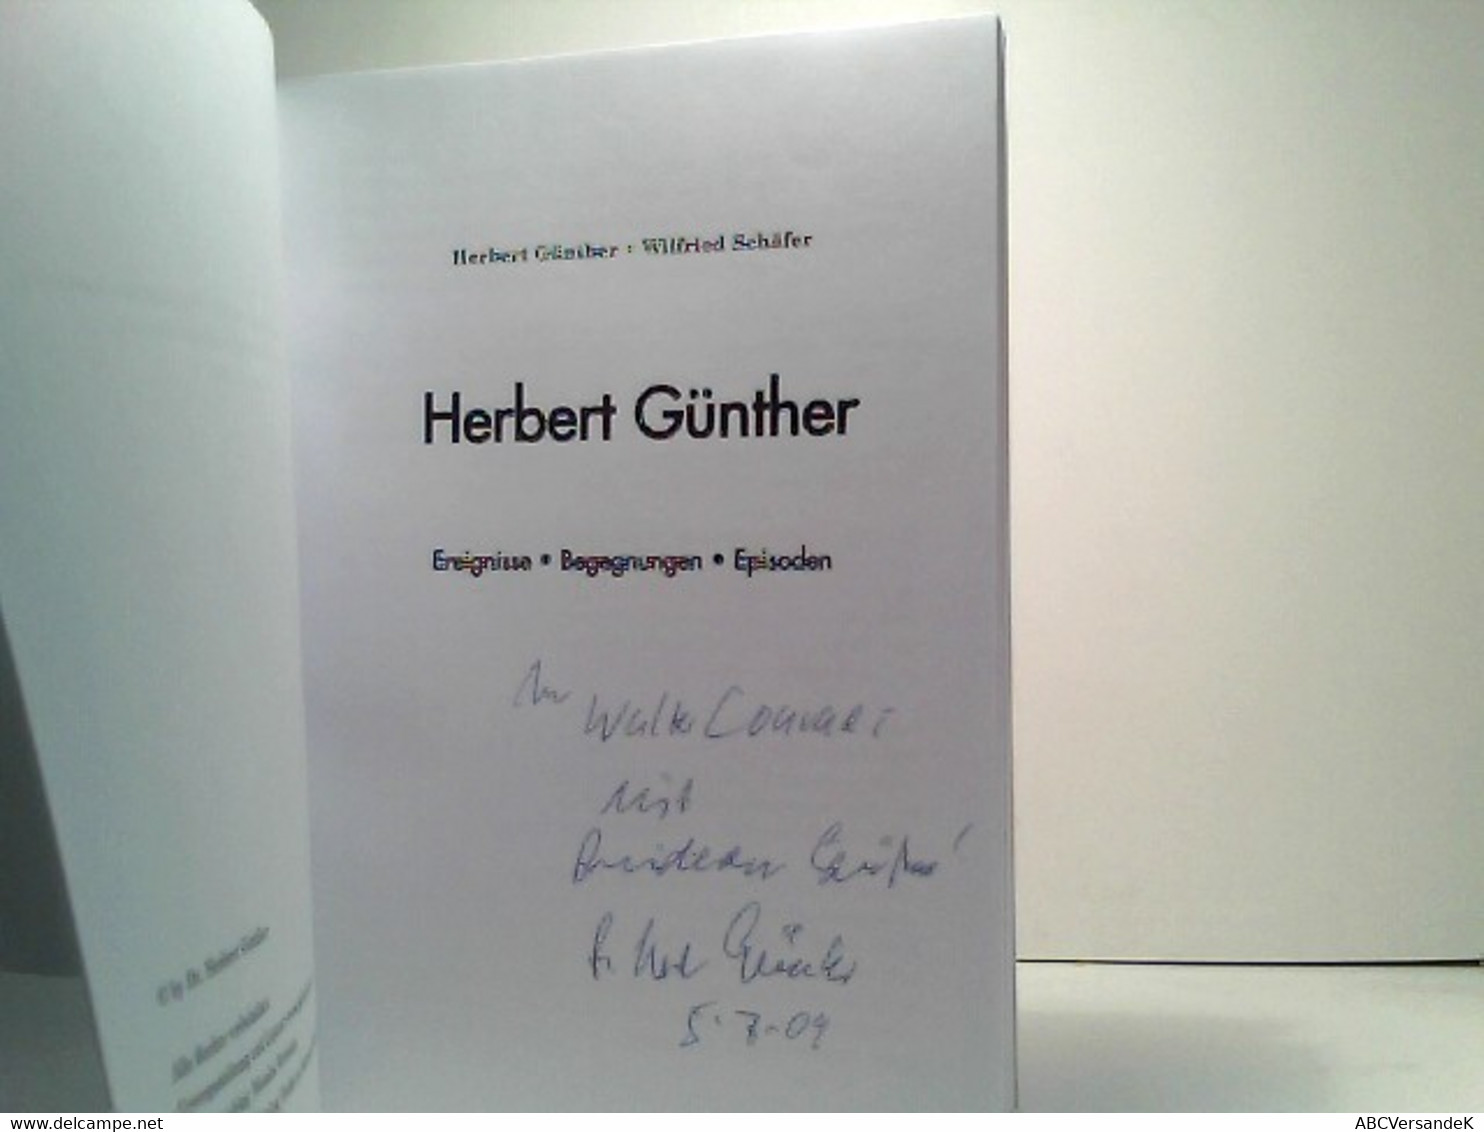 Herbert Günther: Ereignisse, Begegnungen, Episoden - Politik & Zeitgeschichte